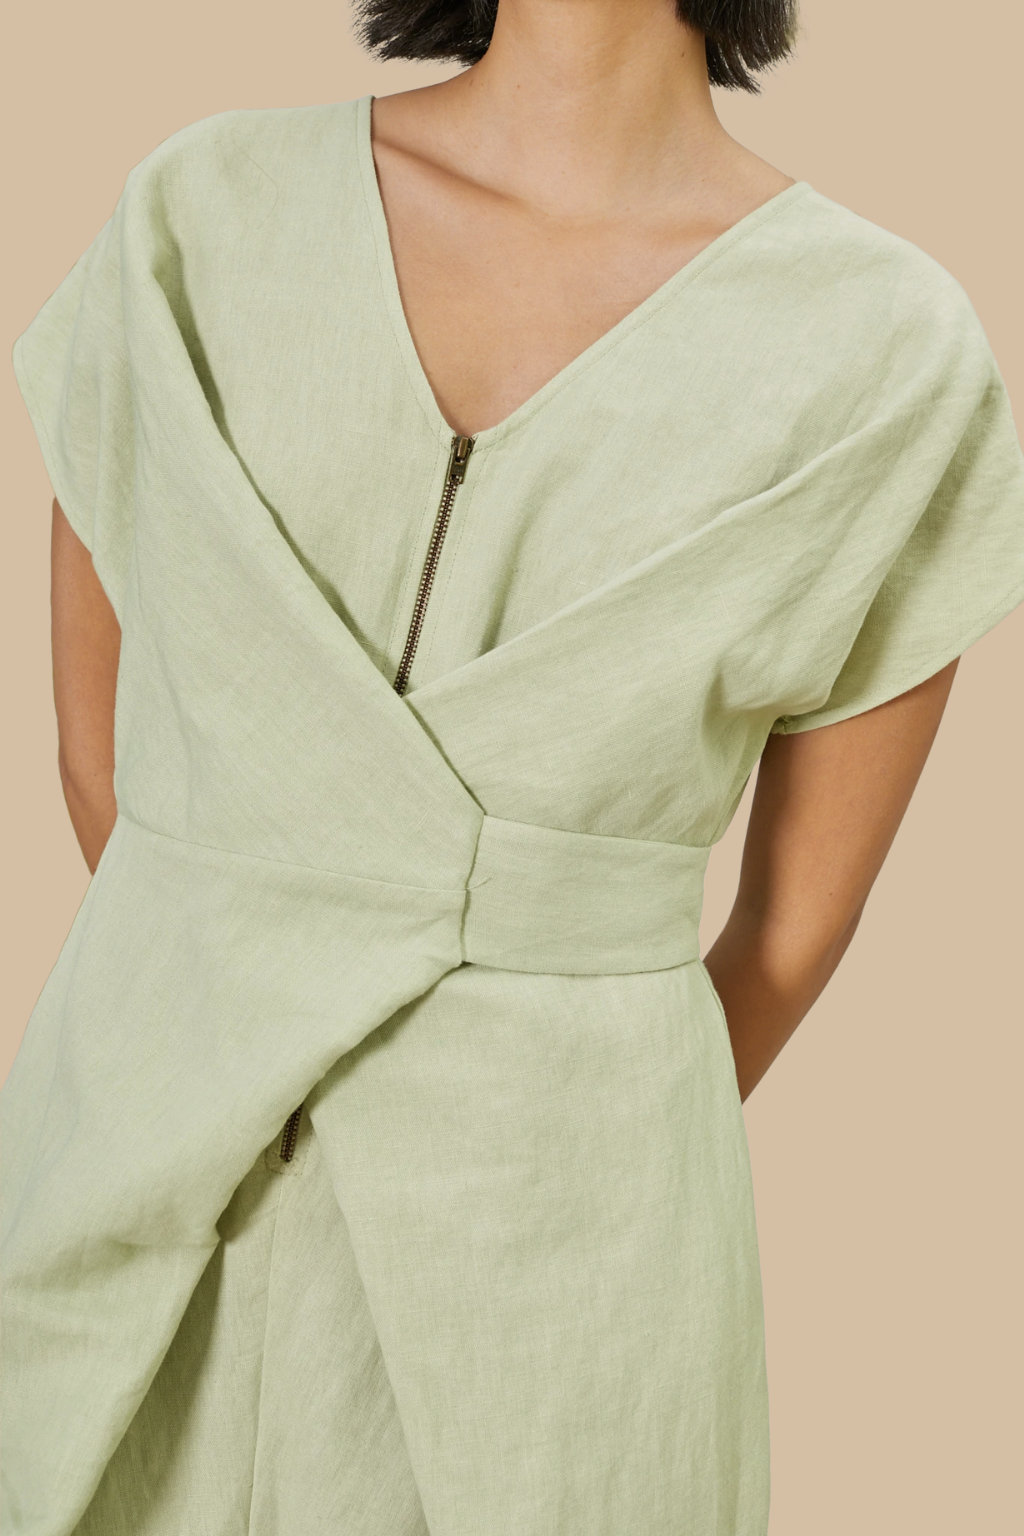 Venus Wrap Jumpsuit in Mint Cotton Linen